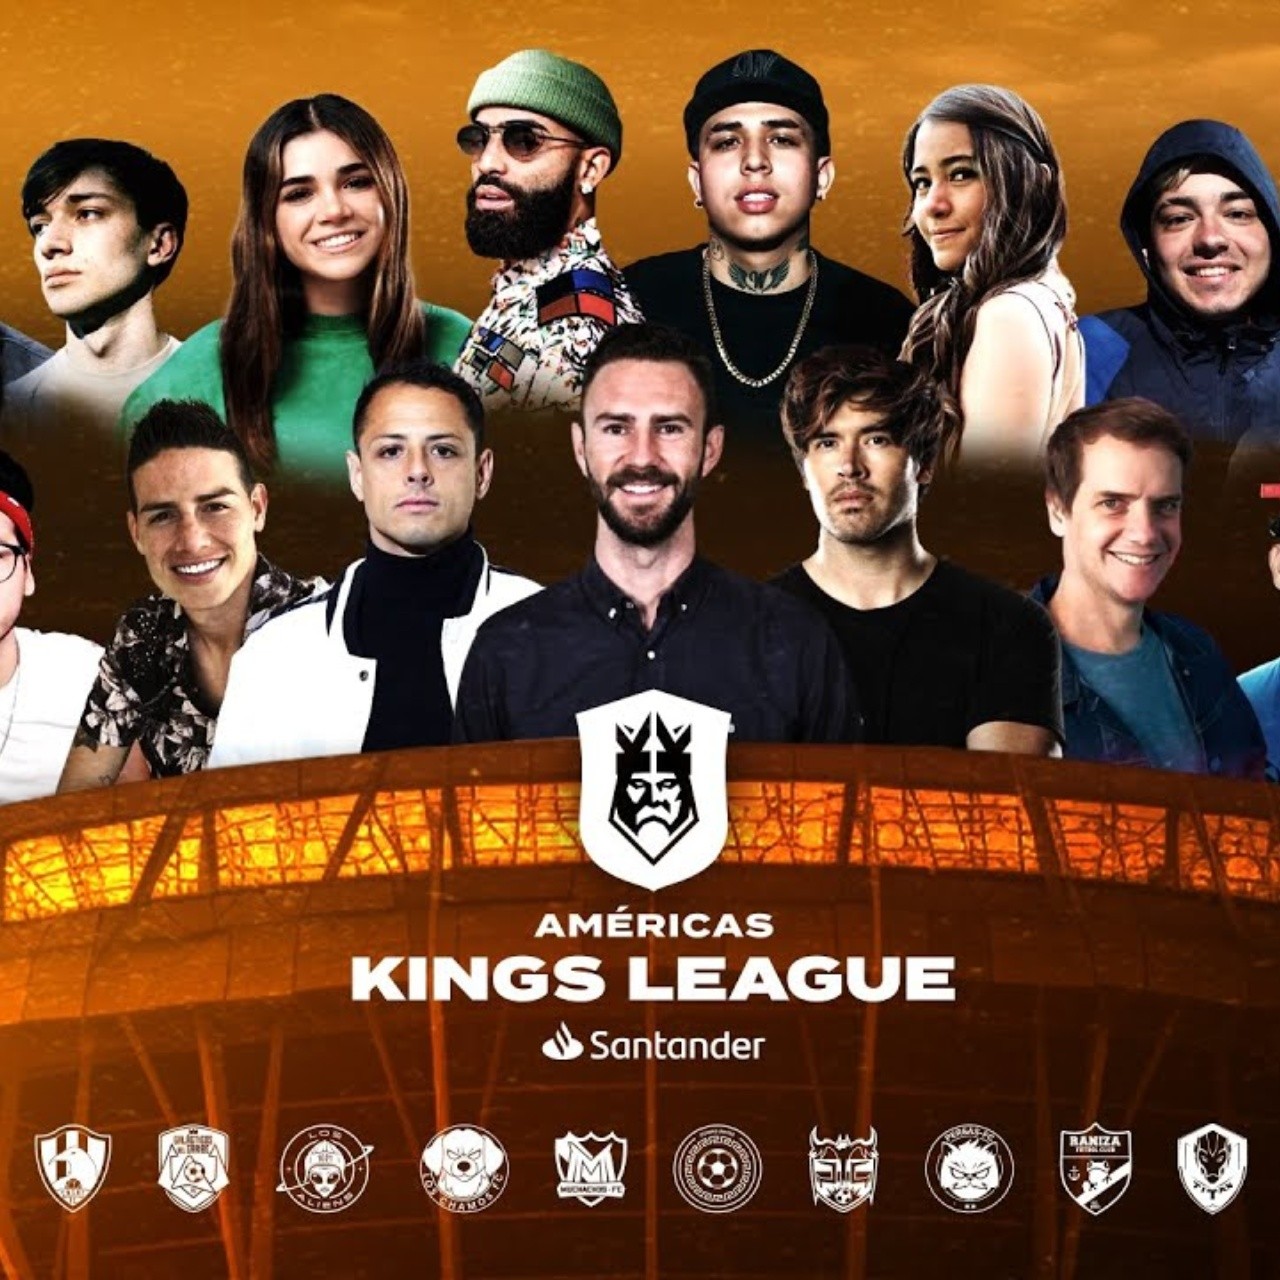 Kings League Santander (@kingsleagueamericas) • Instagram photos